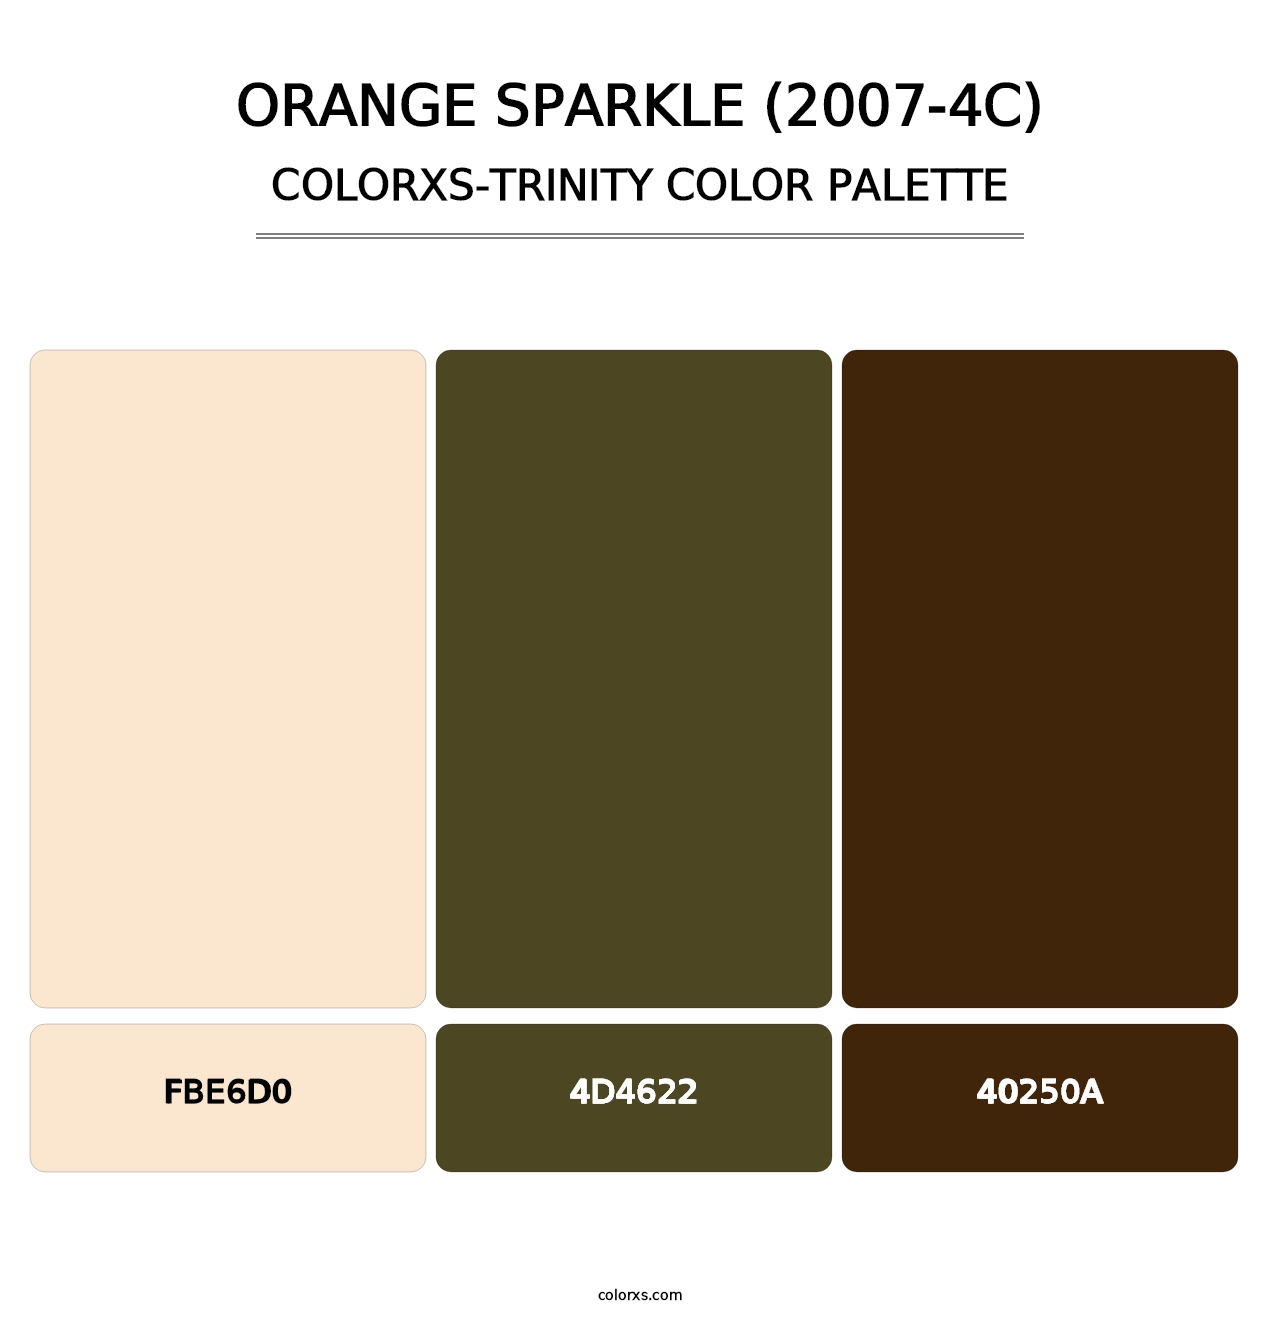 Orange Sparkle (2007-4C) - Colorxs Trinity Palette